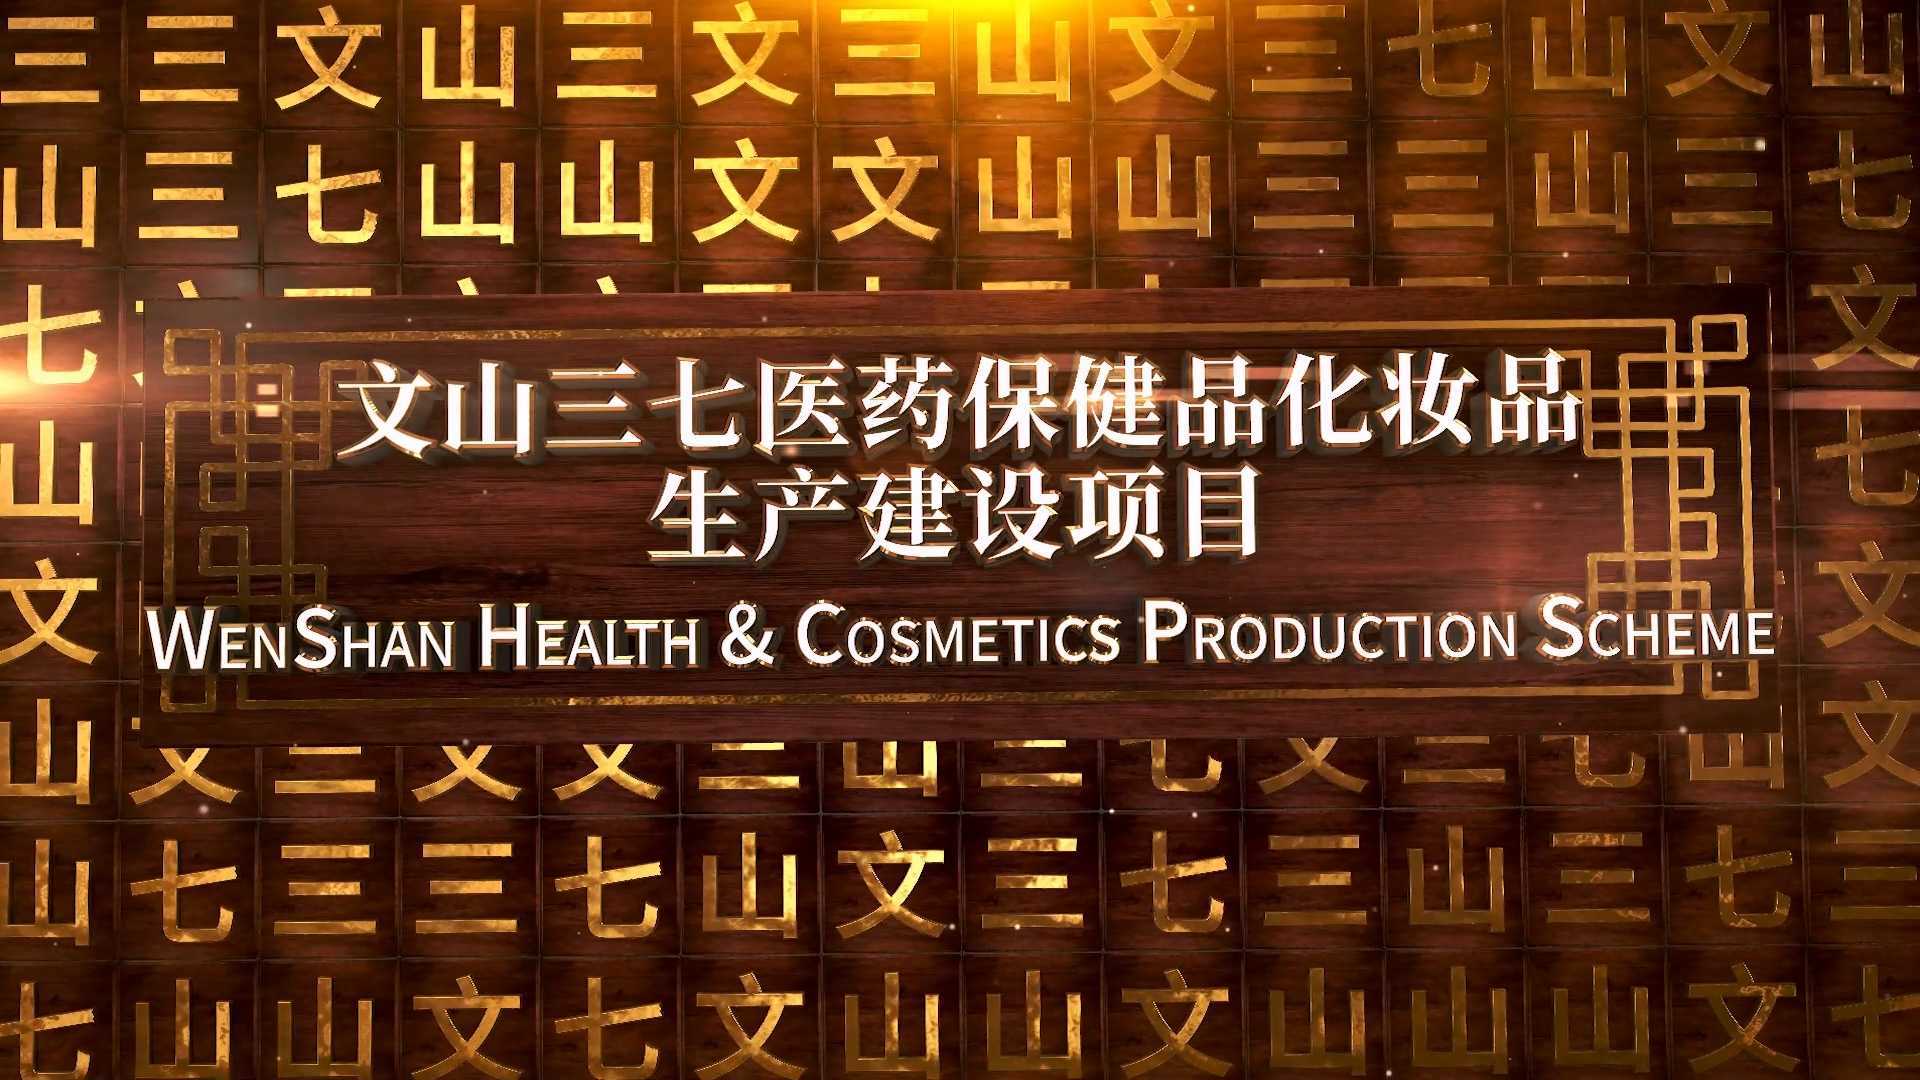 文山生物医药保健品、化妆品生产建设项目